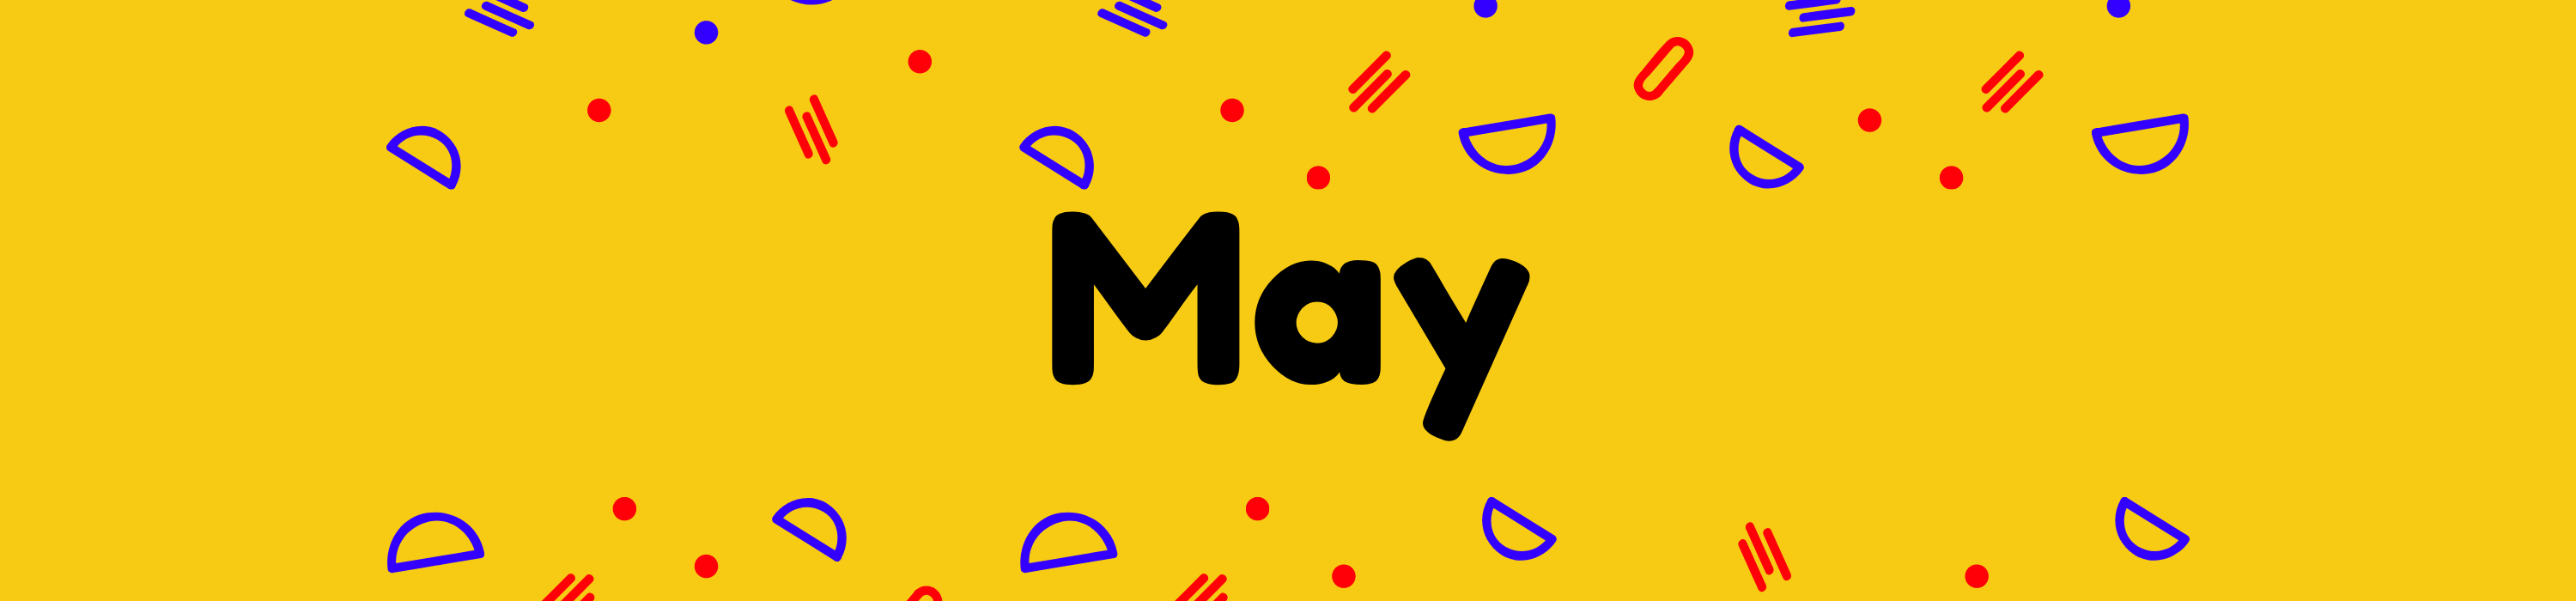 May-banner